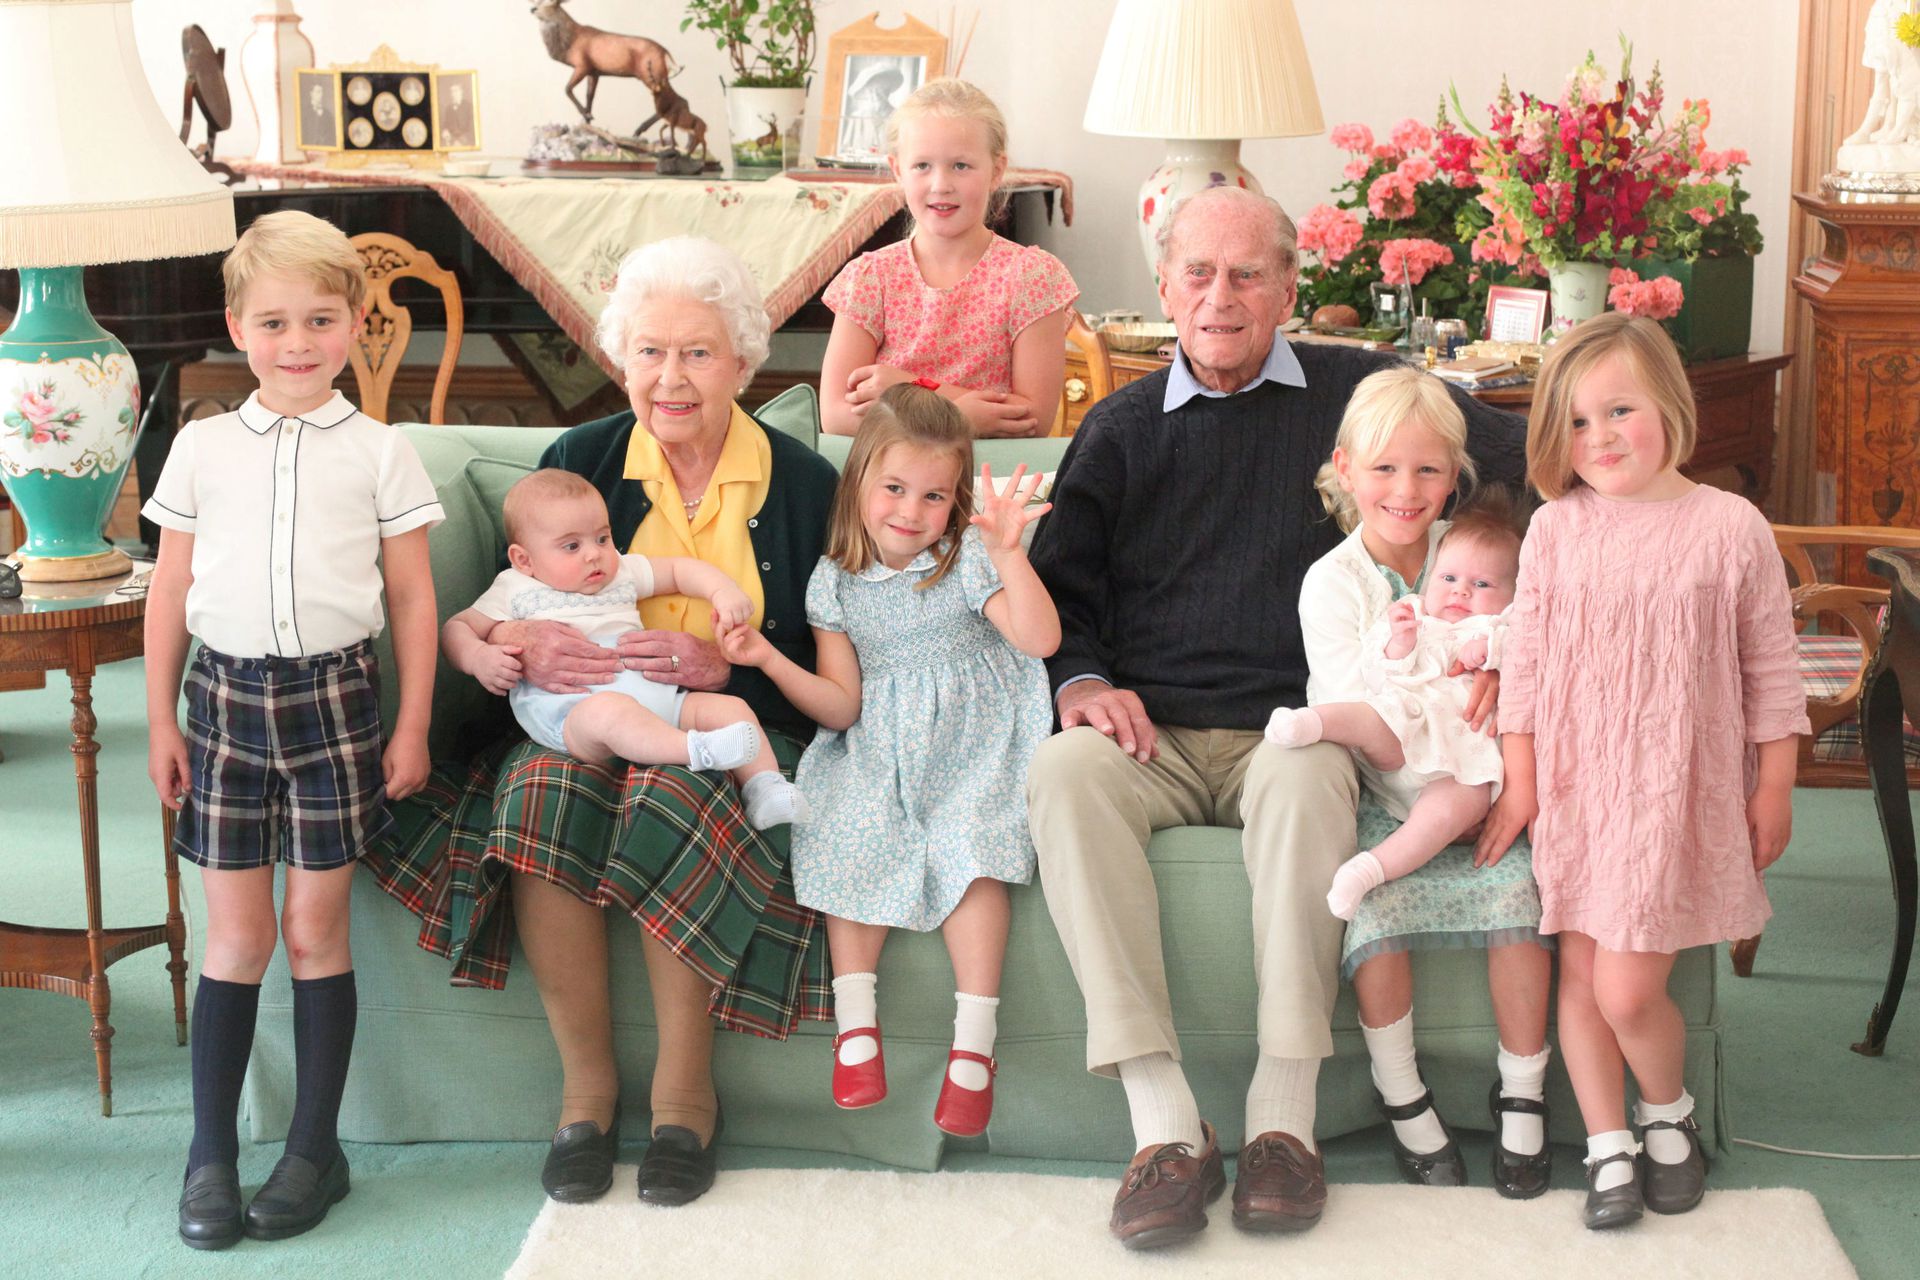 Queen Elizabeth II Death family tree photos